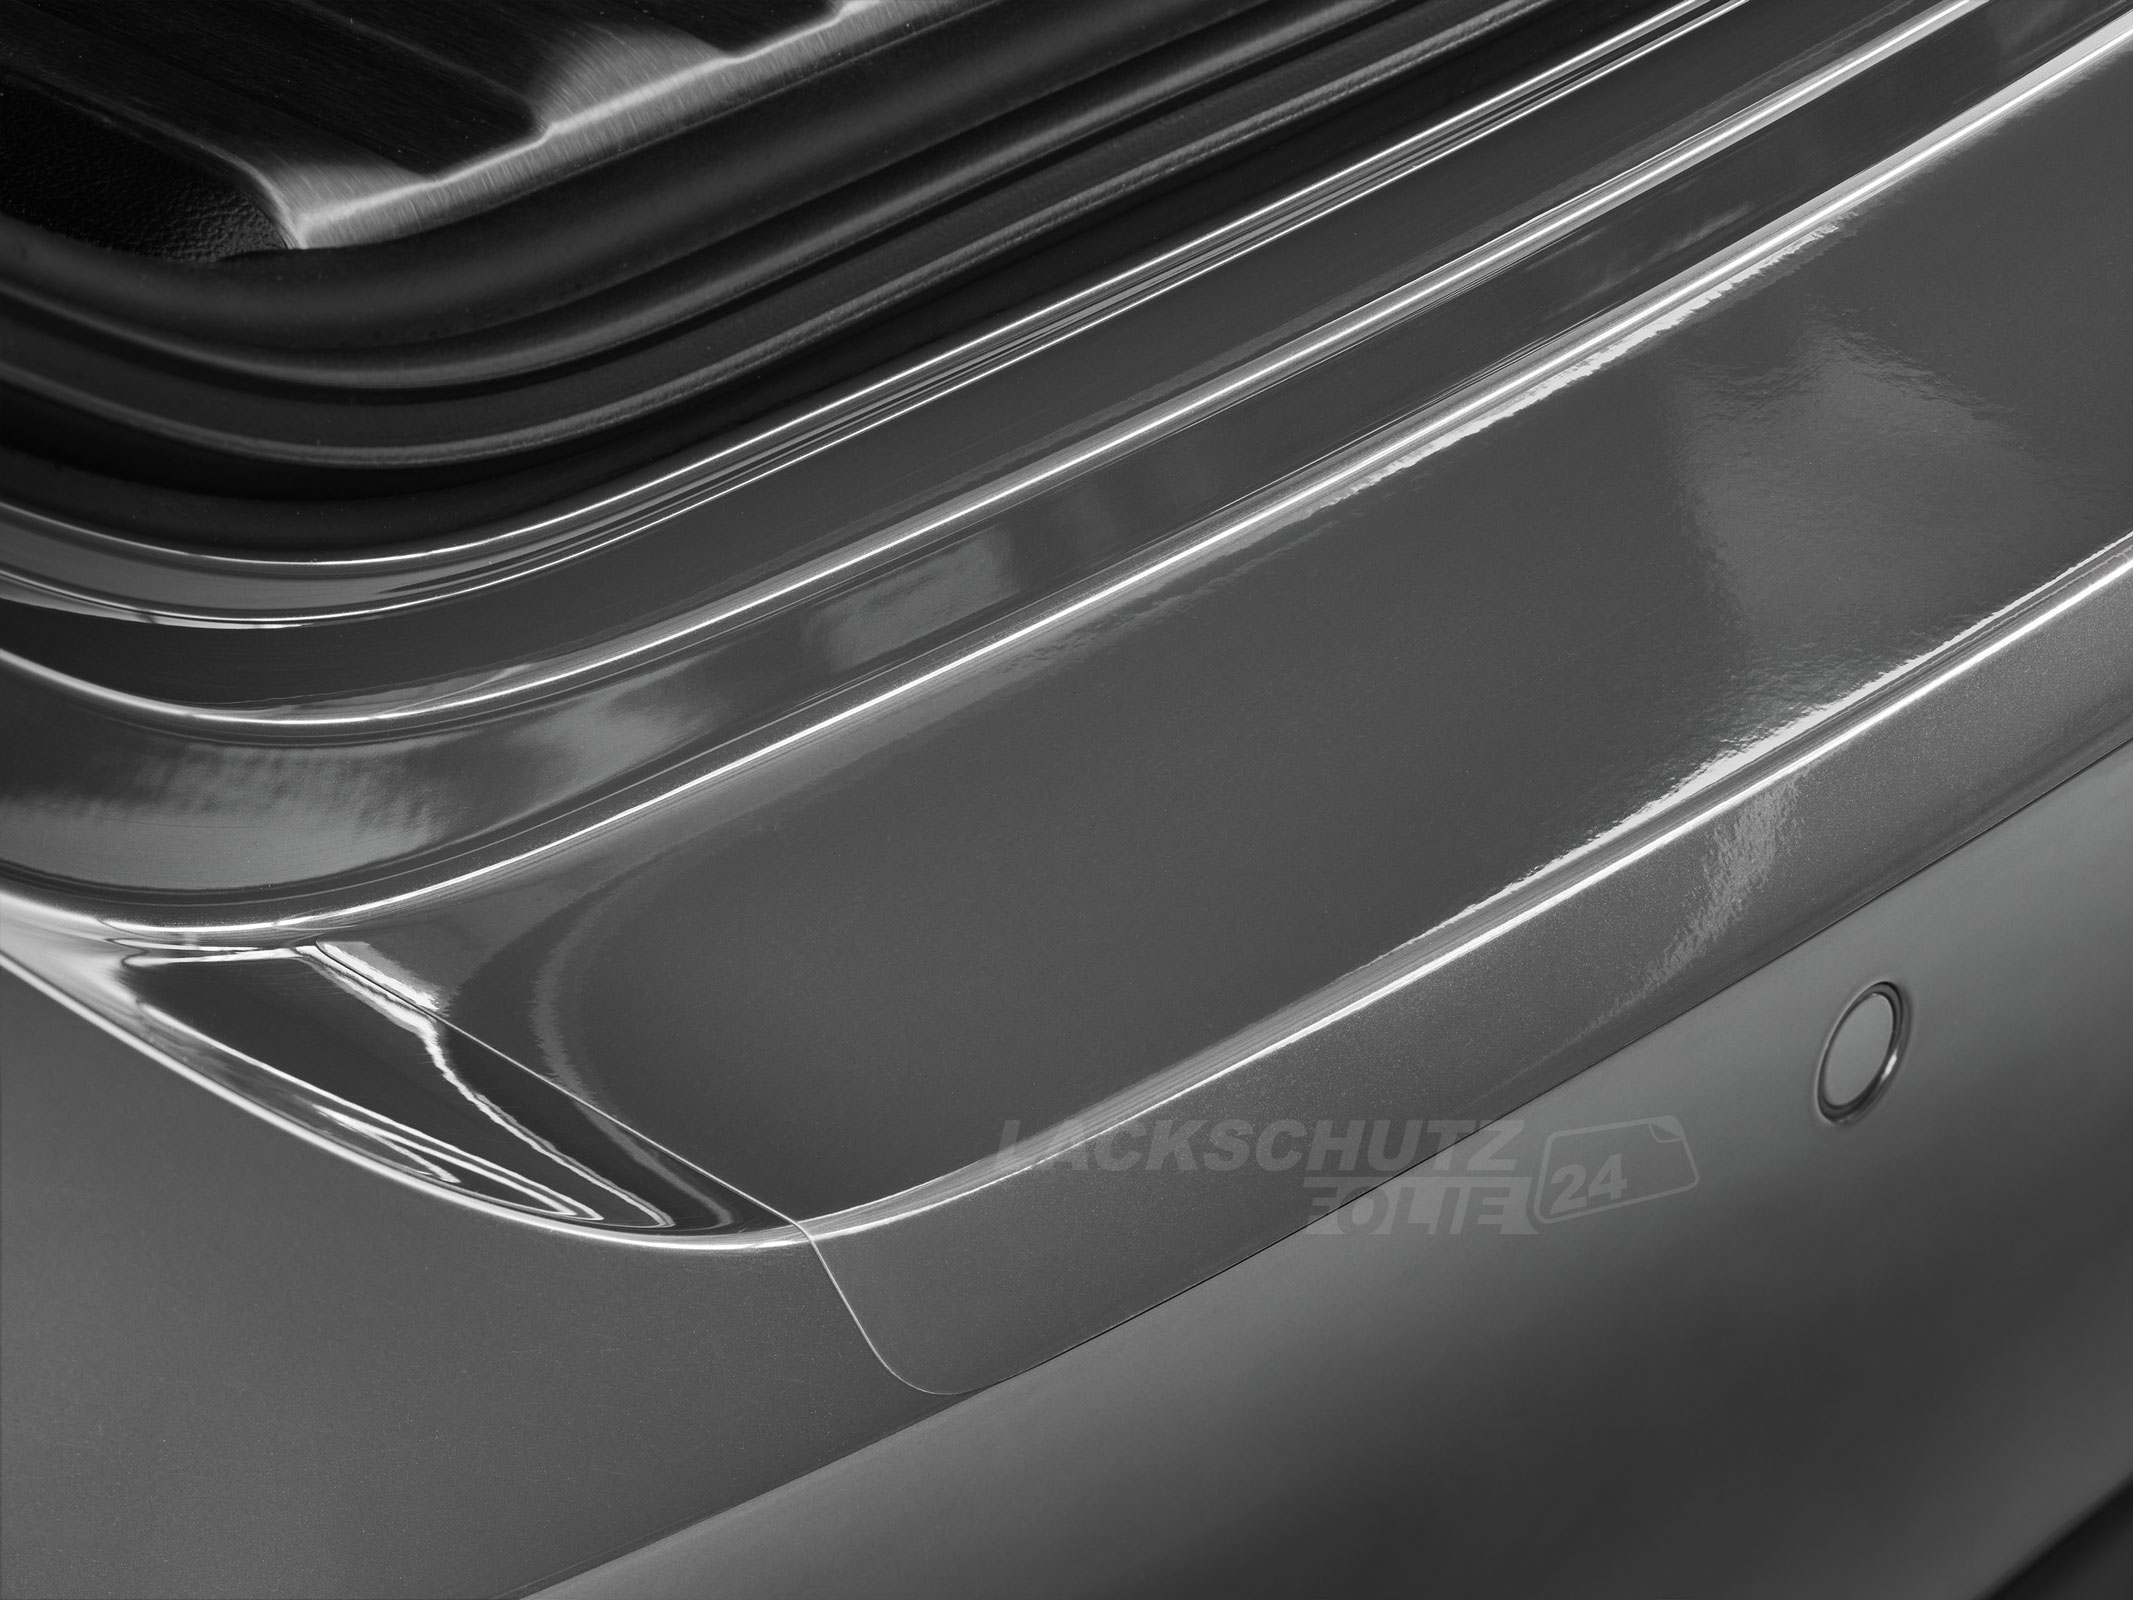 Ladekantenschutzfolie - Transparent Glatt Hochglänzend für Hyundai Kona Hybrid, BJ 11/2017-10/2020